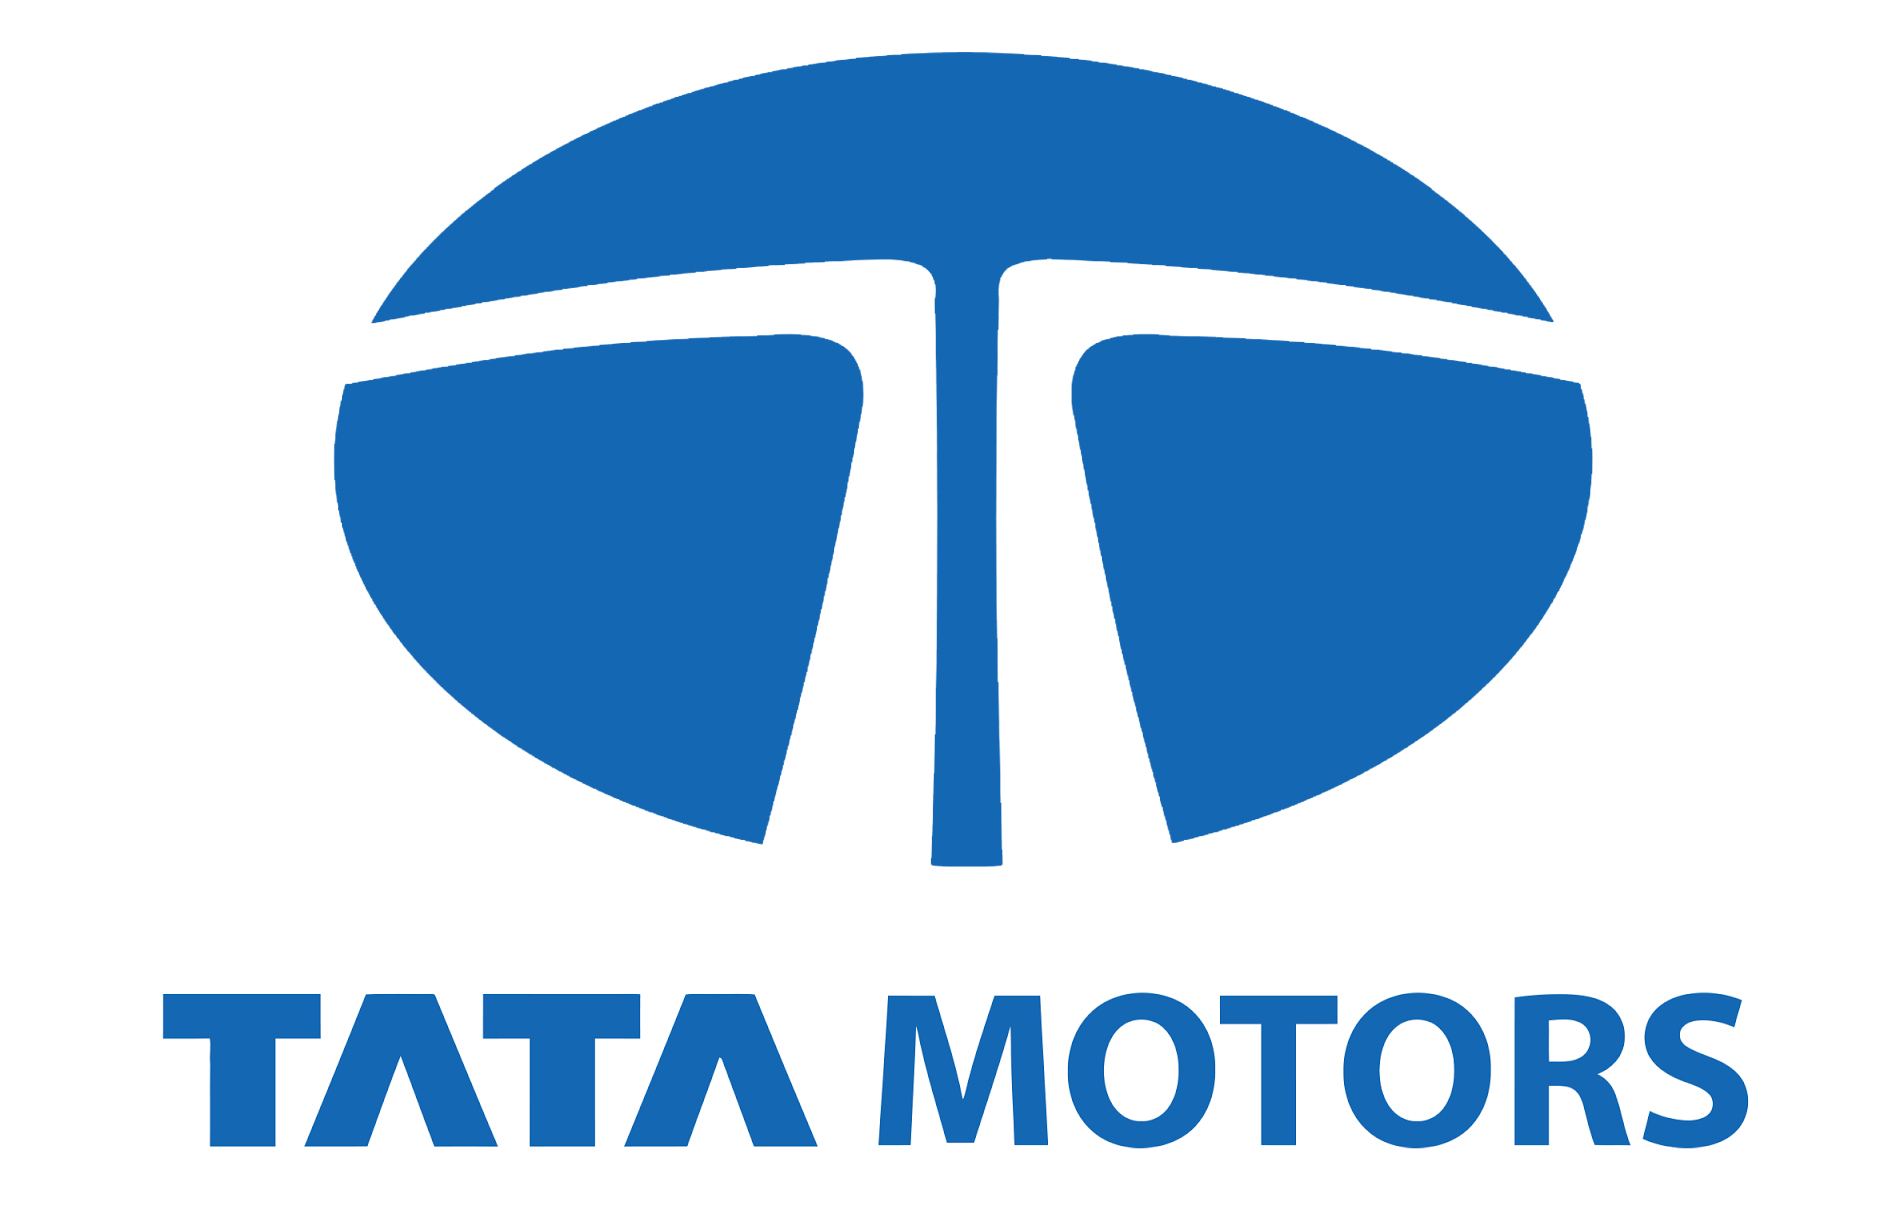 Tata Motors Cars Service Centre - Society Motors Logo